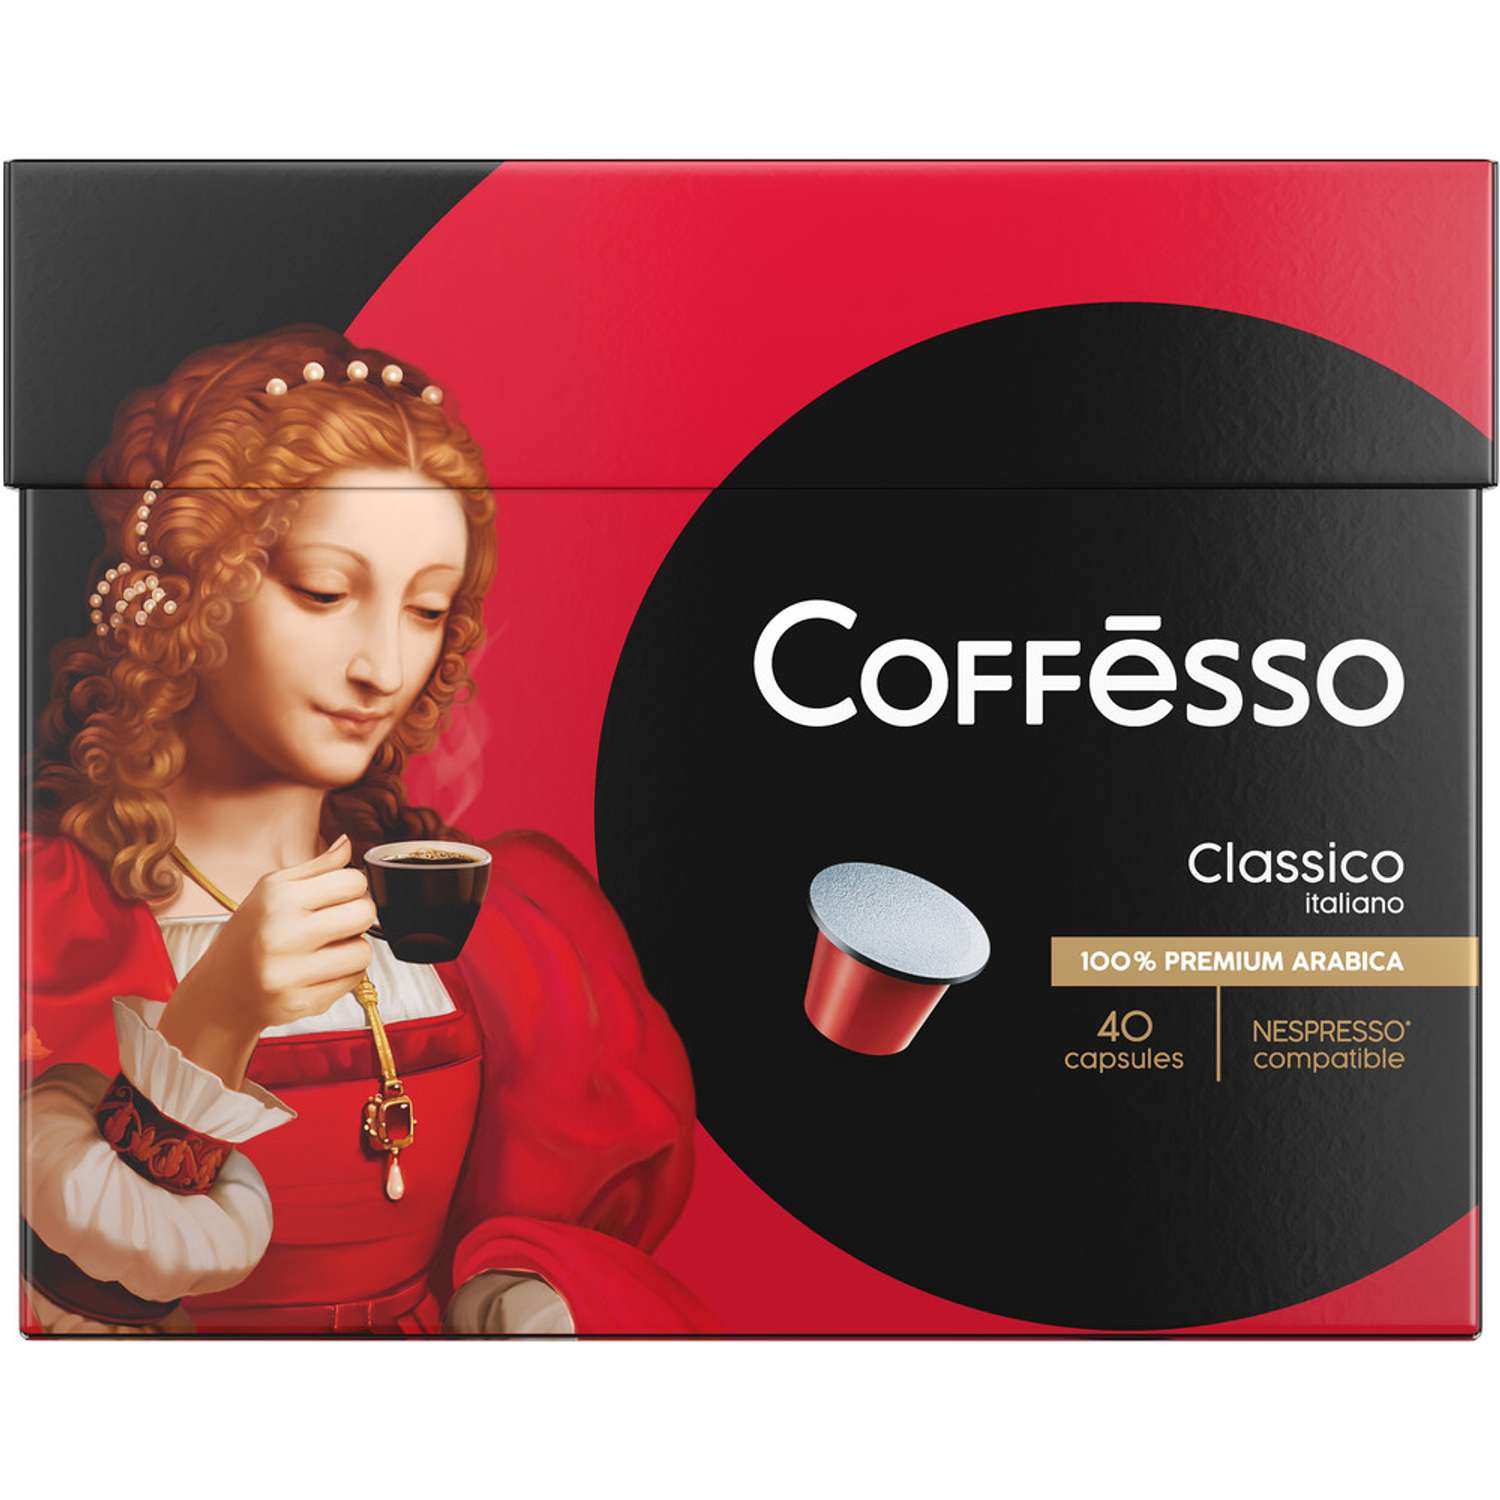 Кофе в капсулах Coffesso Classico Italiano 40 капсул по 5 г - фото 2